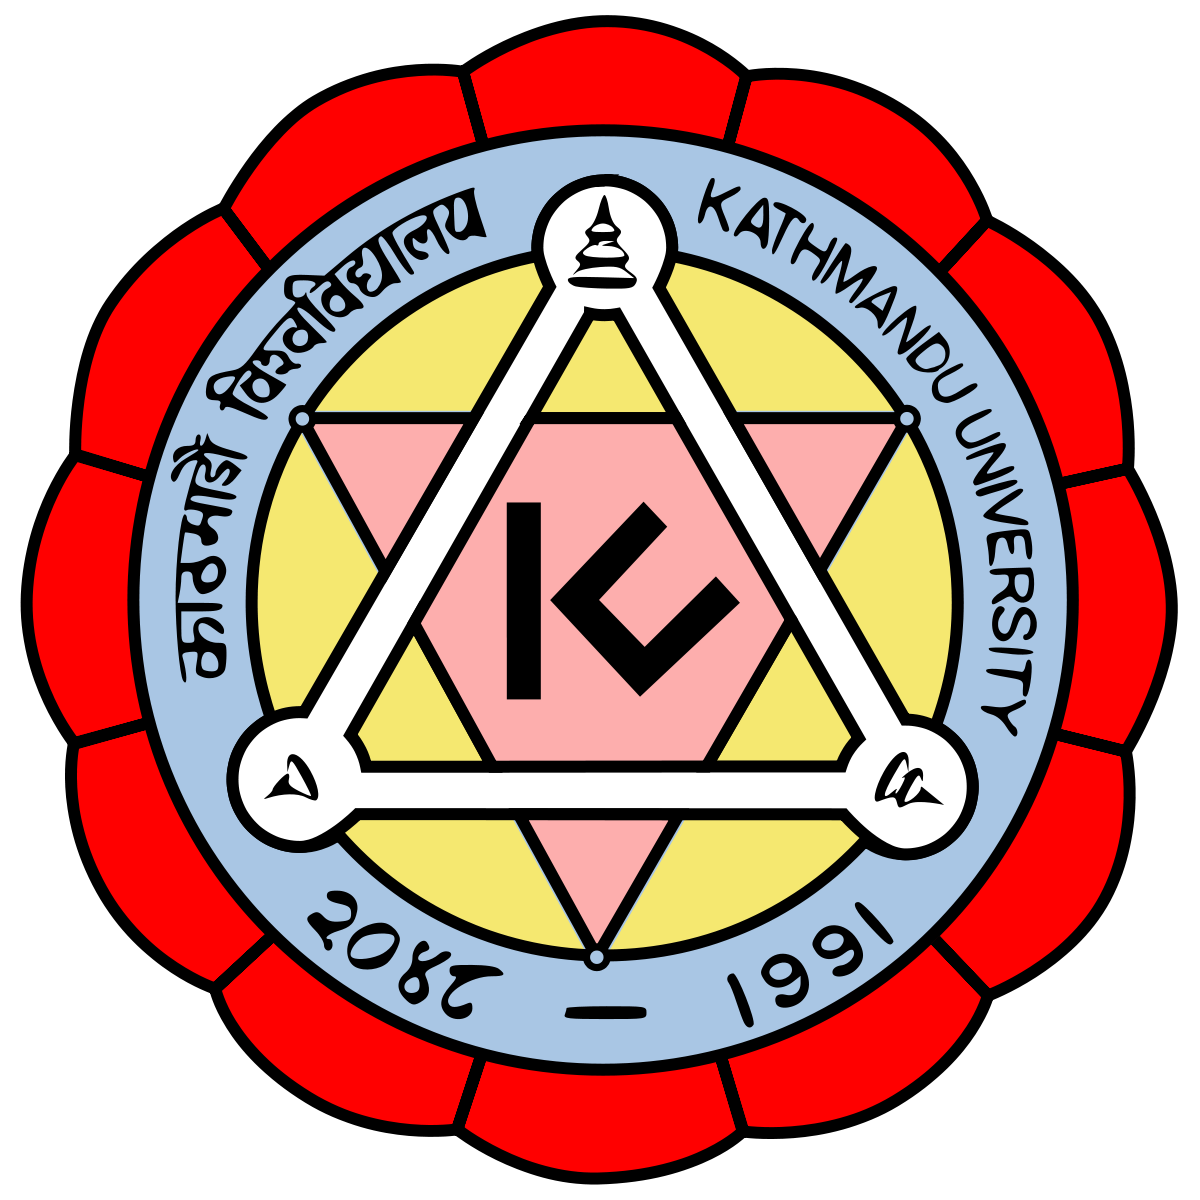 Kathmandu Institute of Medical Science